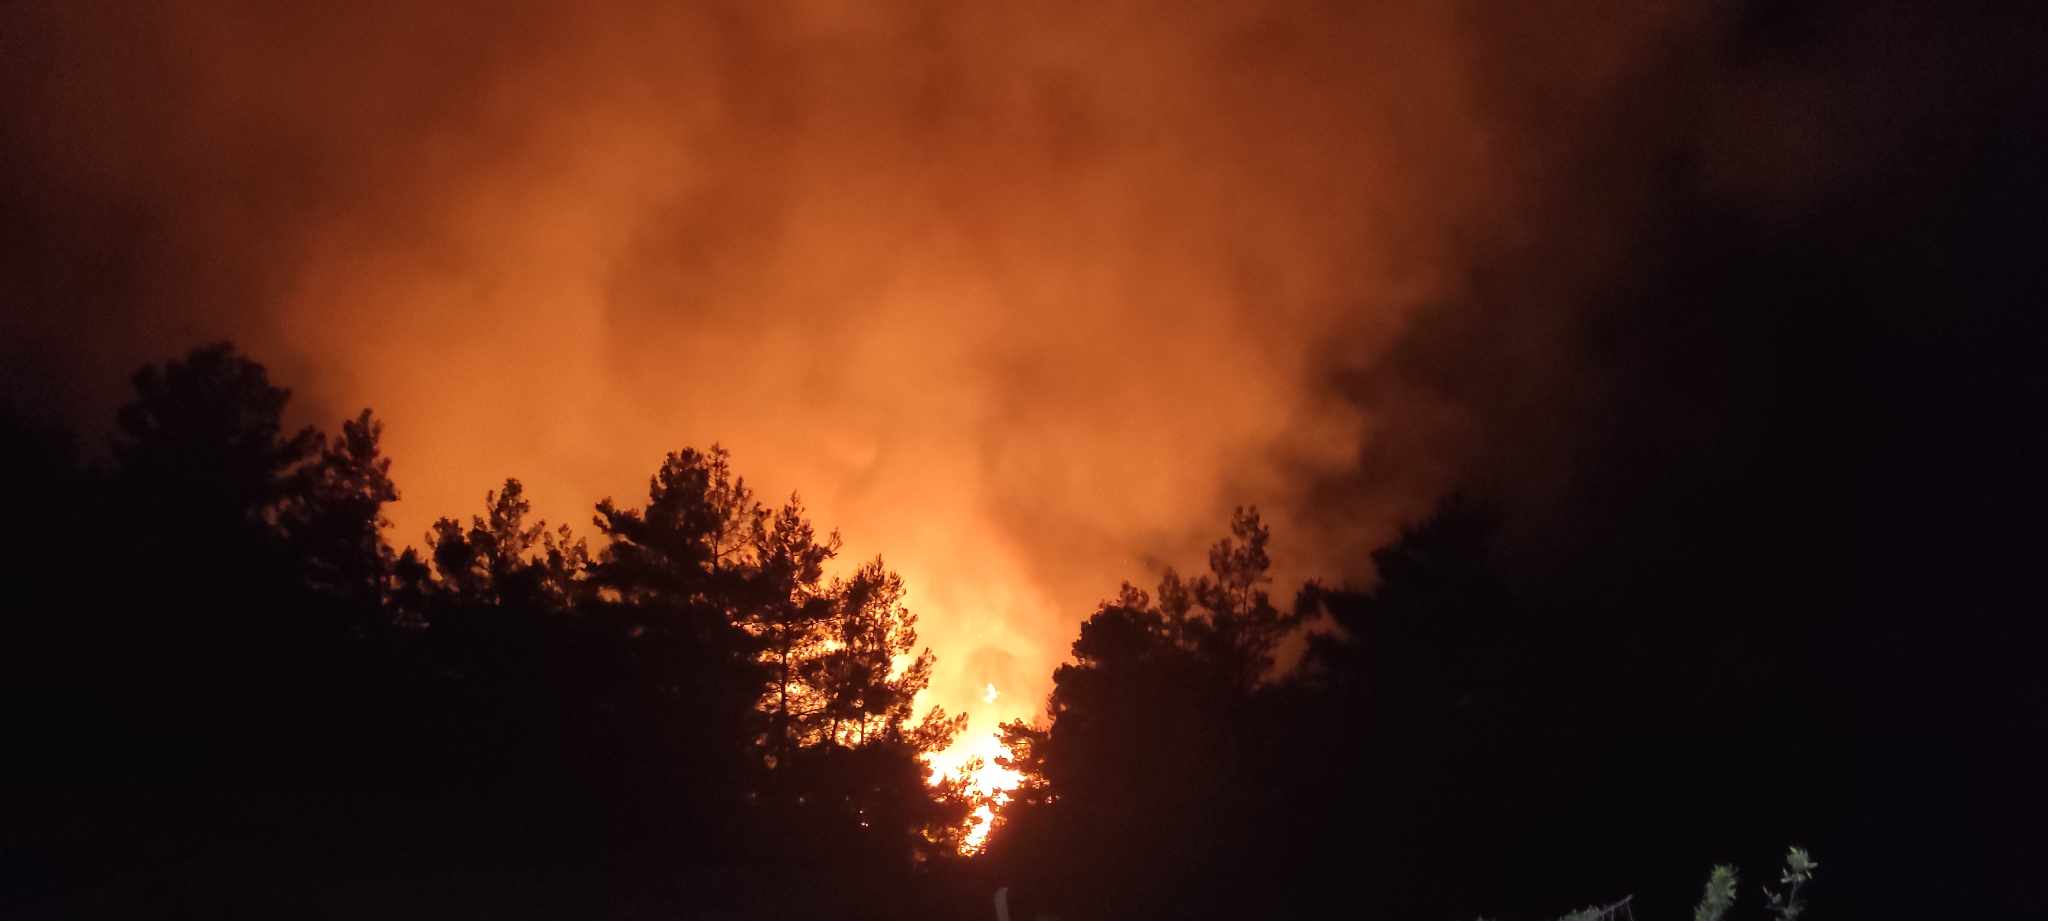 Φωτιά στη Βλυχάδα: «Αν περάσει το δρόμο χαθήκαμε» – Μάχη για να μη περάσουν οι φλόγες στην πυκνοκατοικημένη περιοχή της Ν. Περάμου